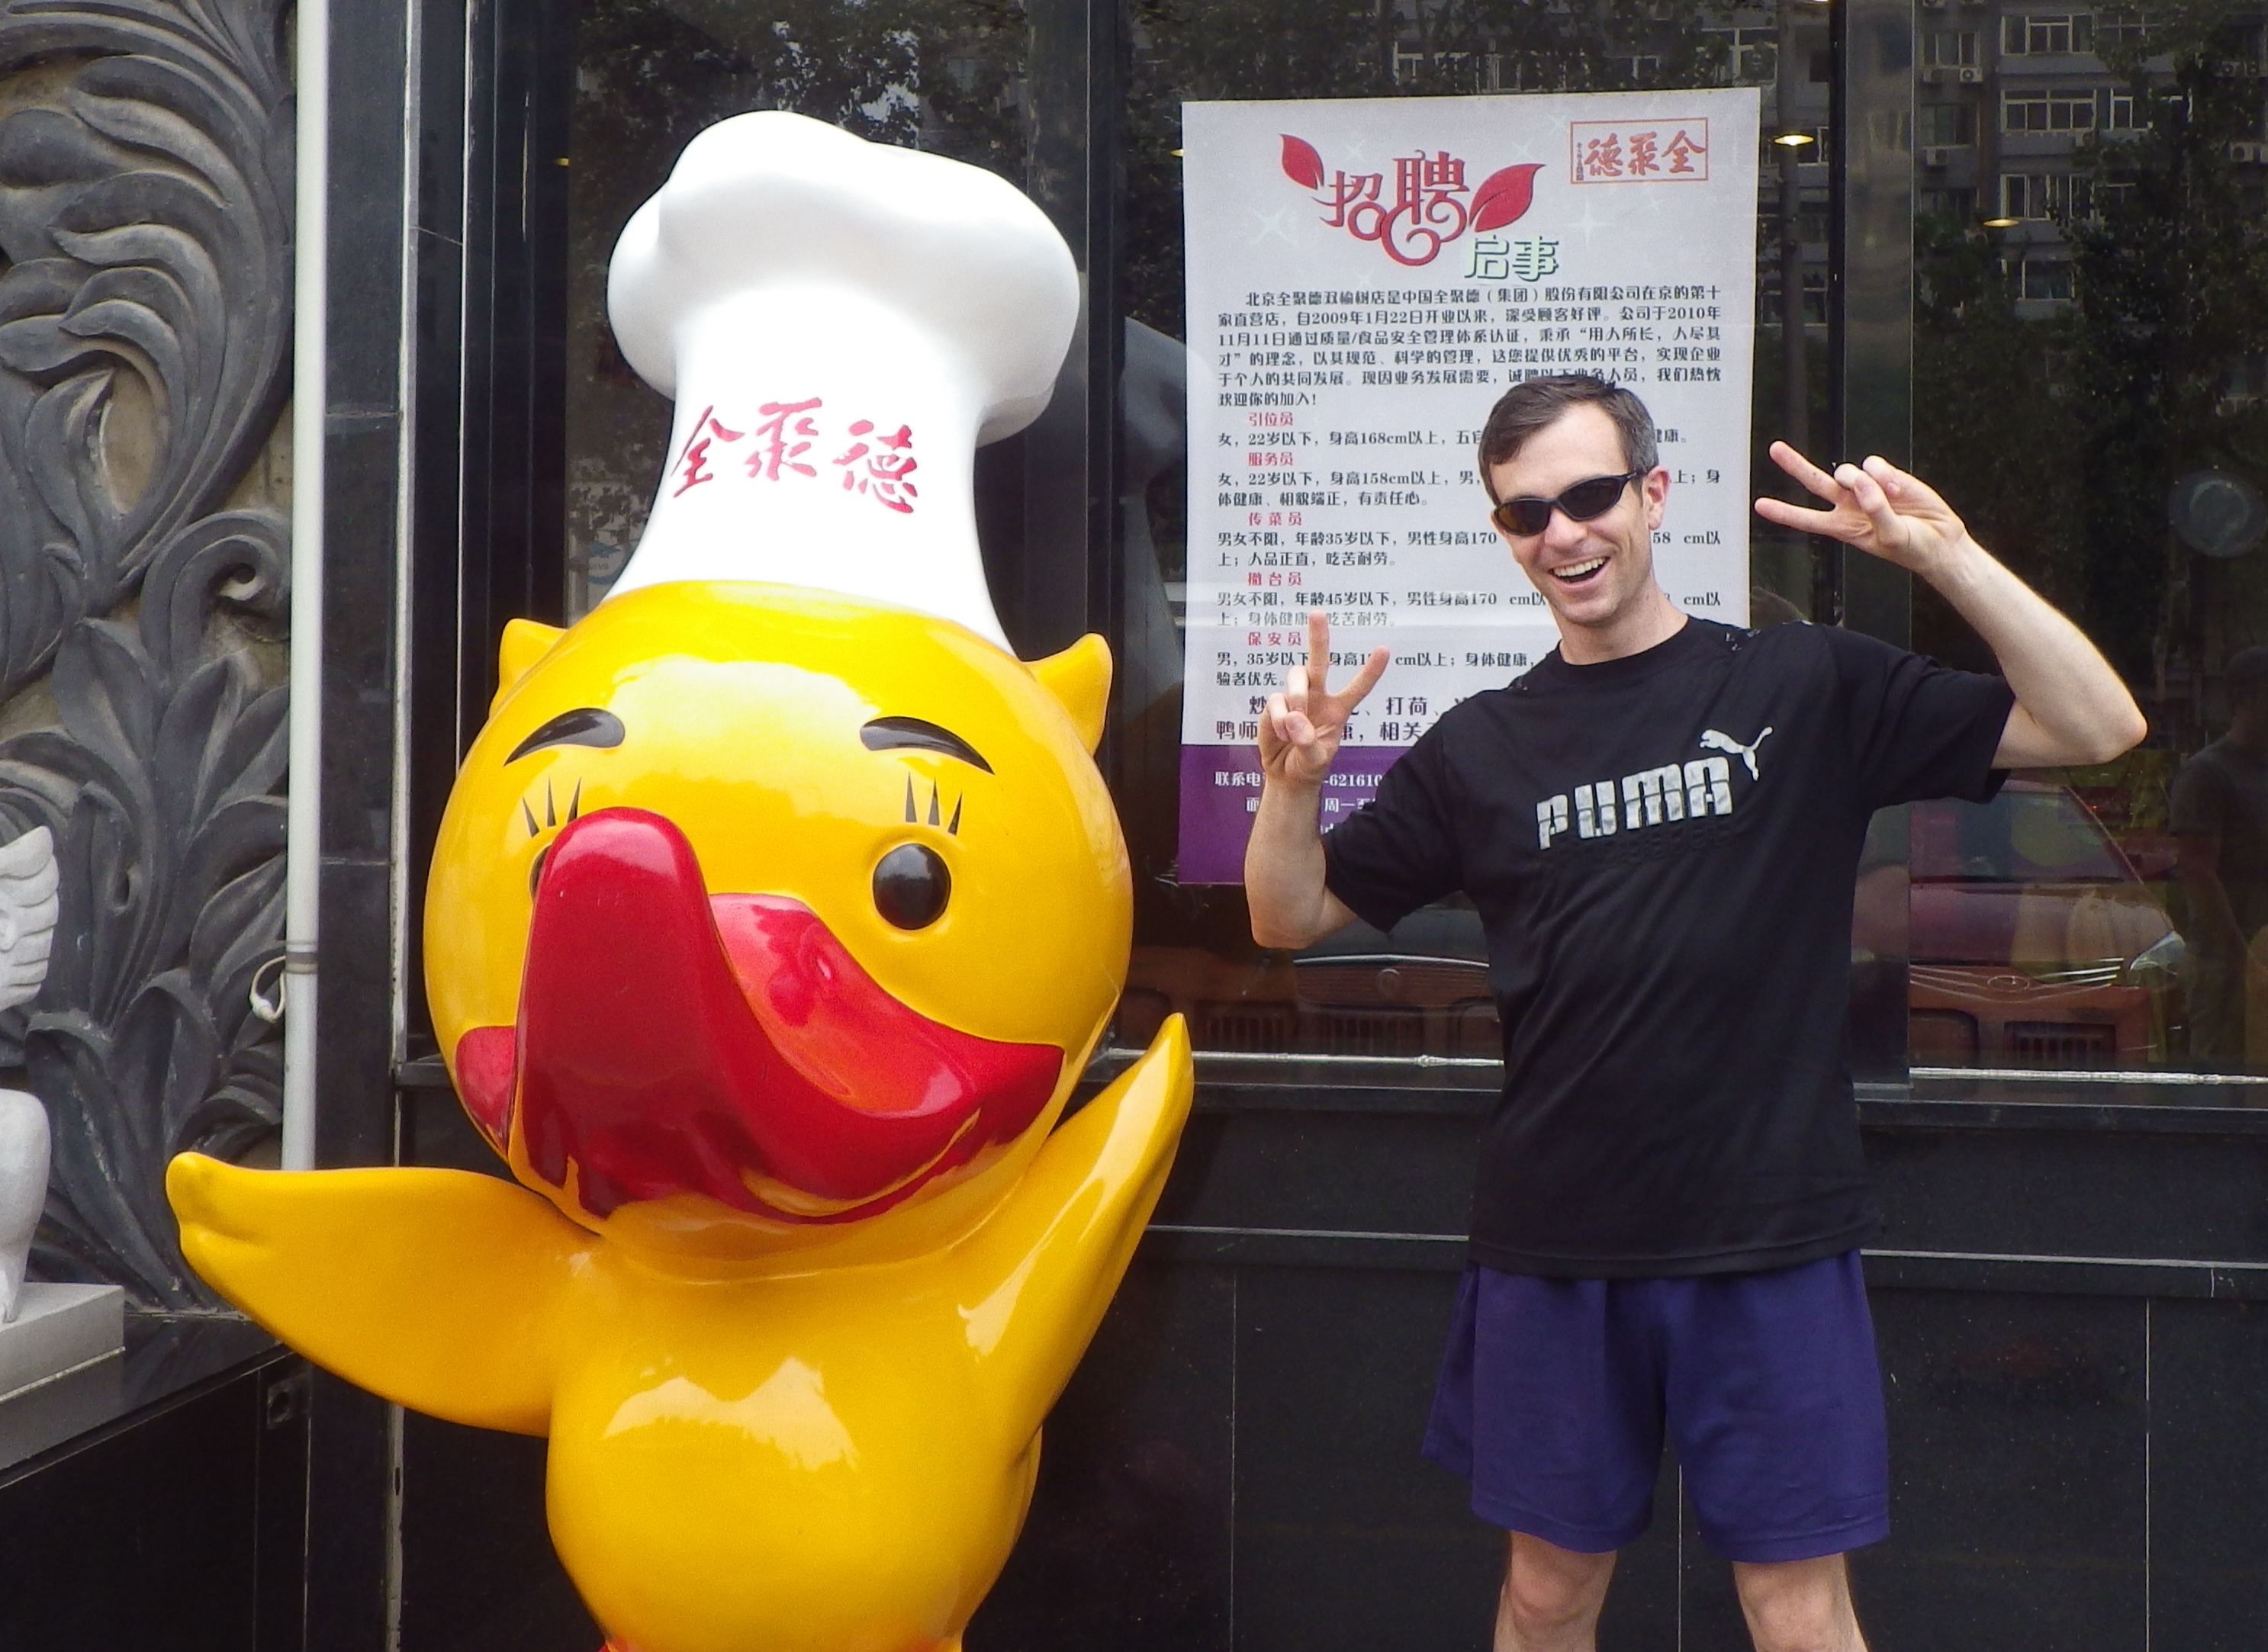 John standing next to a Beijing roast duck mascot in Beijing in 2014